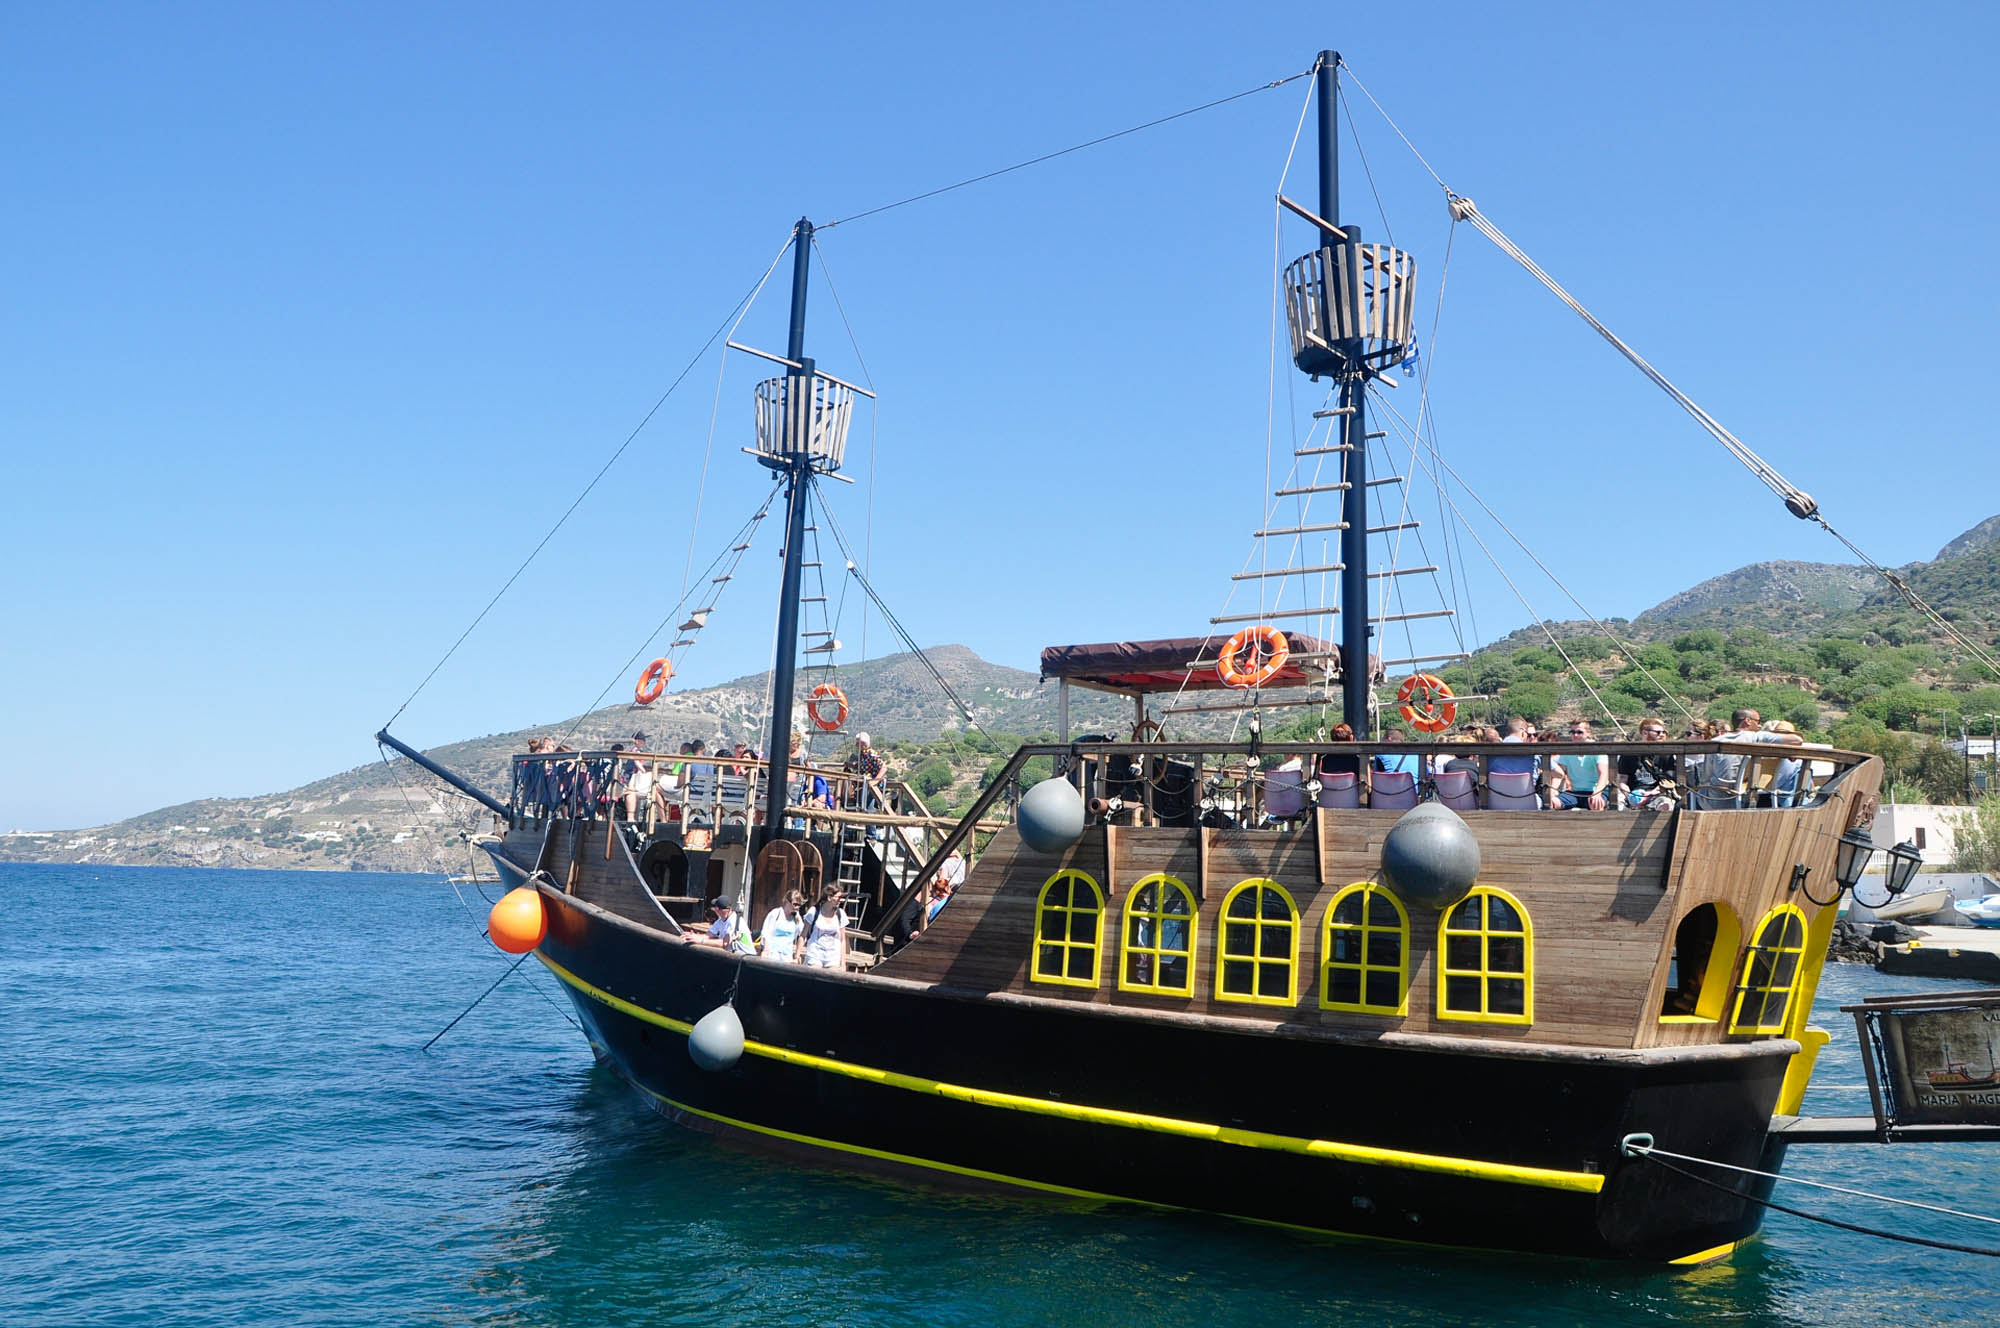 Statek Czarna Perła na Morzu Egejskim u wybrzeży wyspy Kos